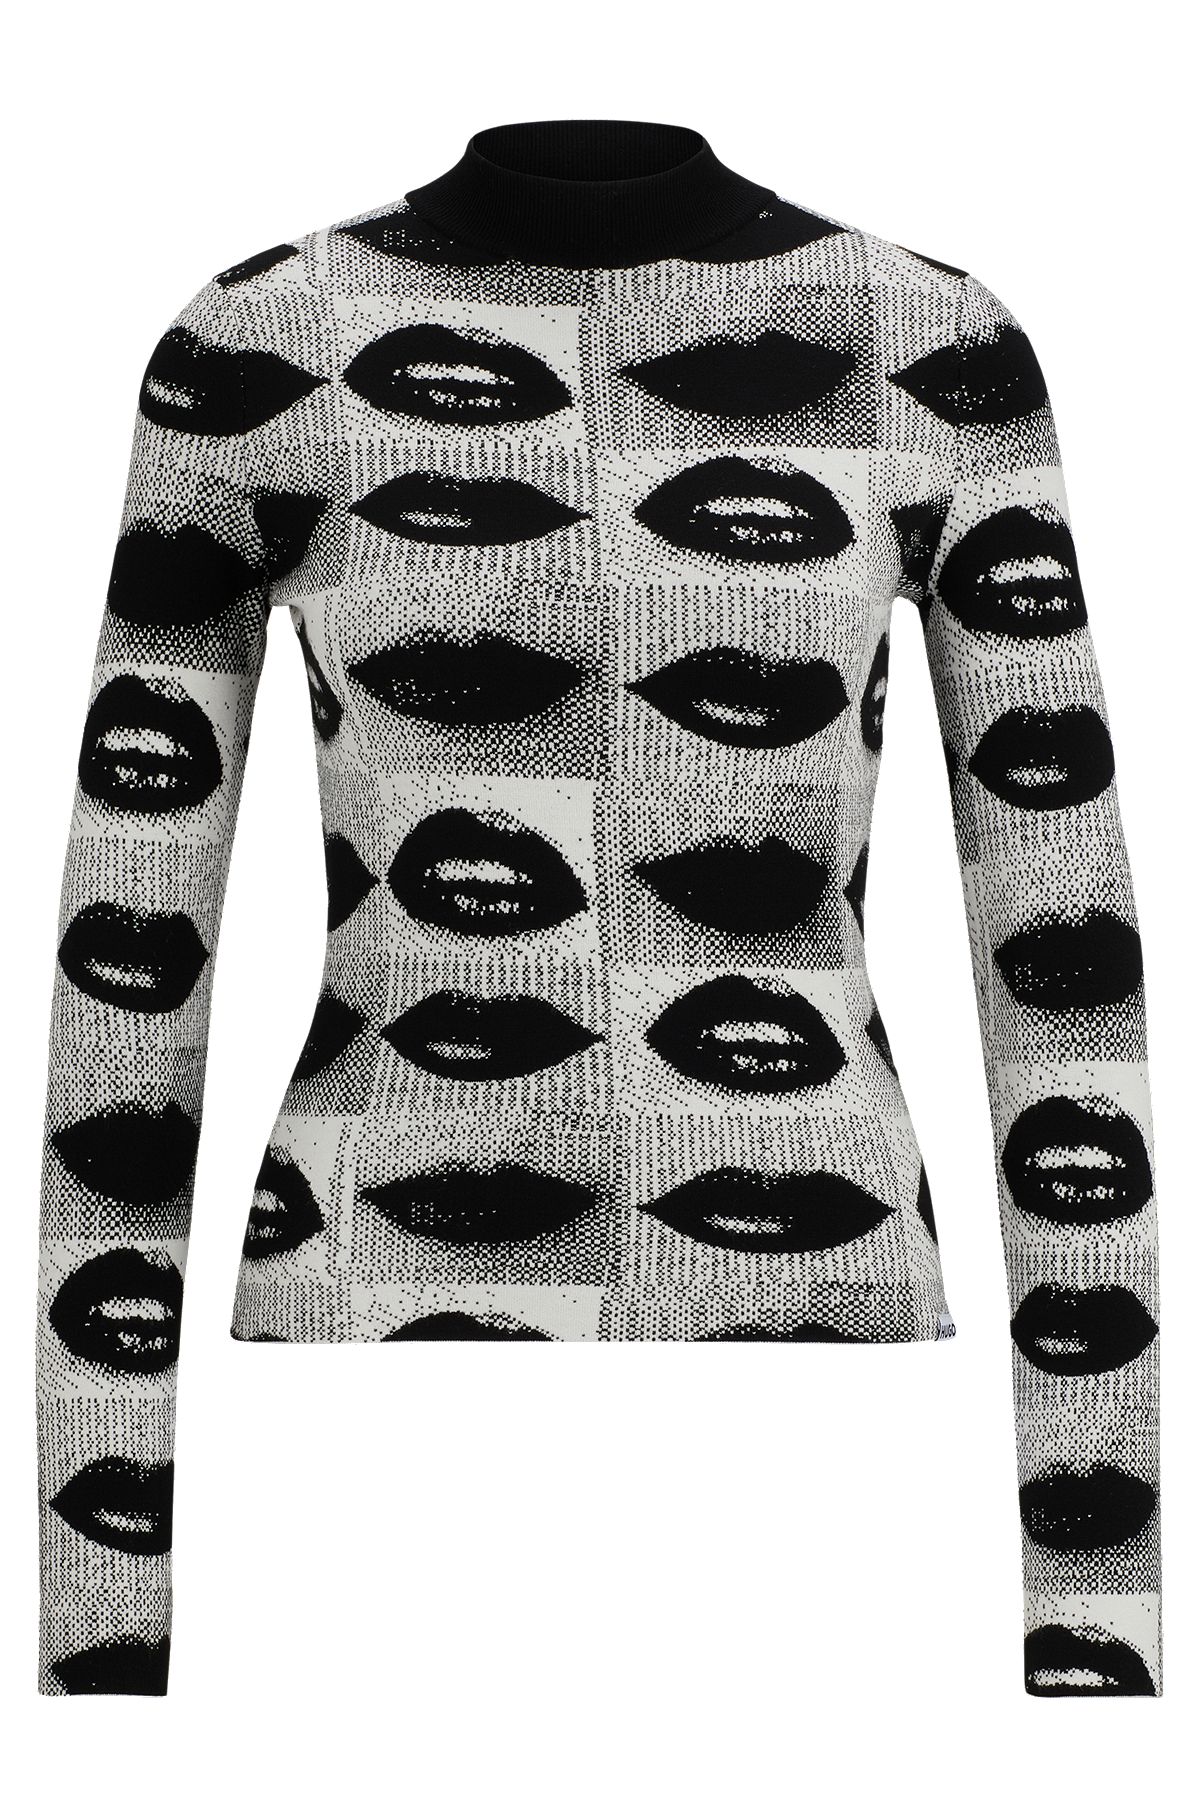 Pullover mit Stehkragen und Lippen-Print aus Jacquard, Schwarz gemustert